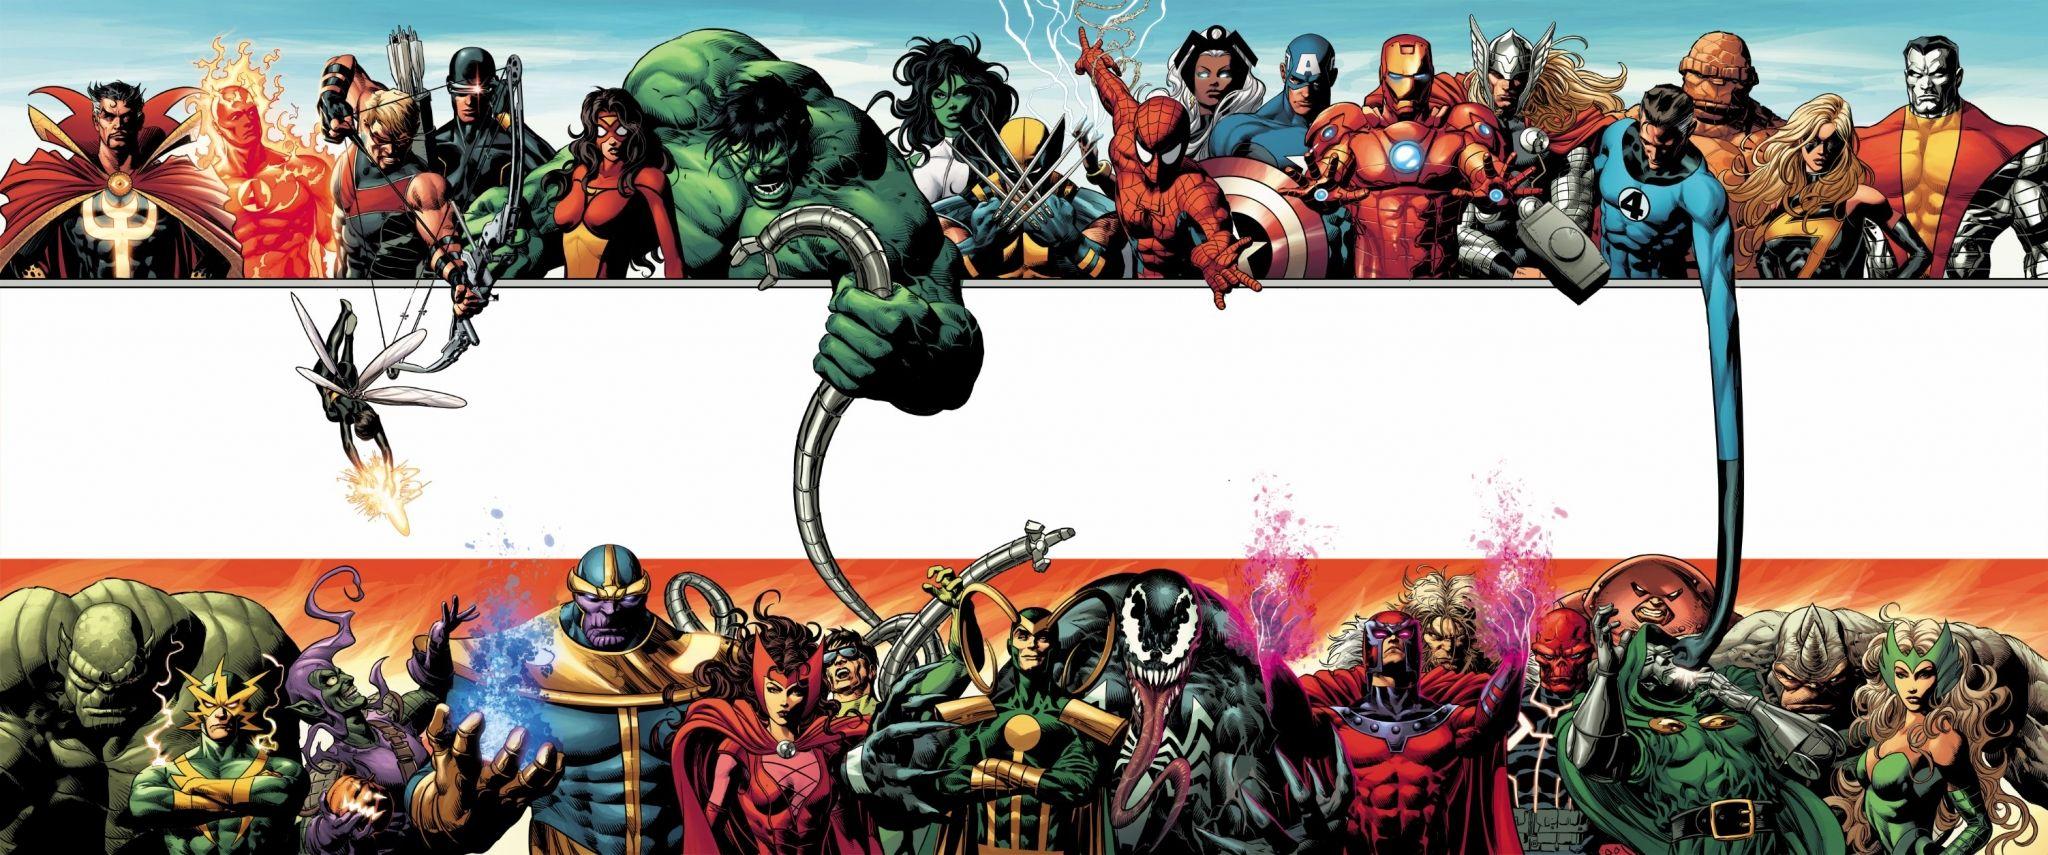 marvel image for desktop background. Marvel. Marvel